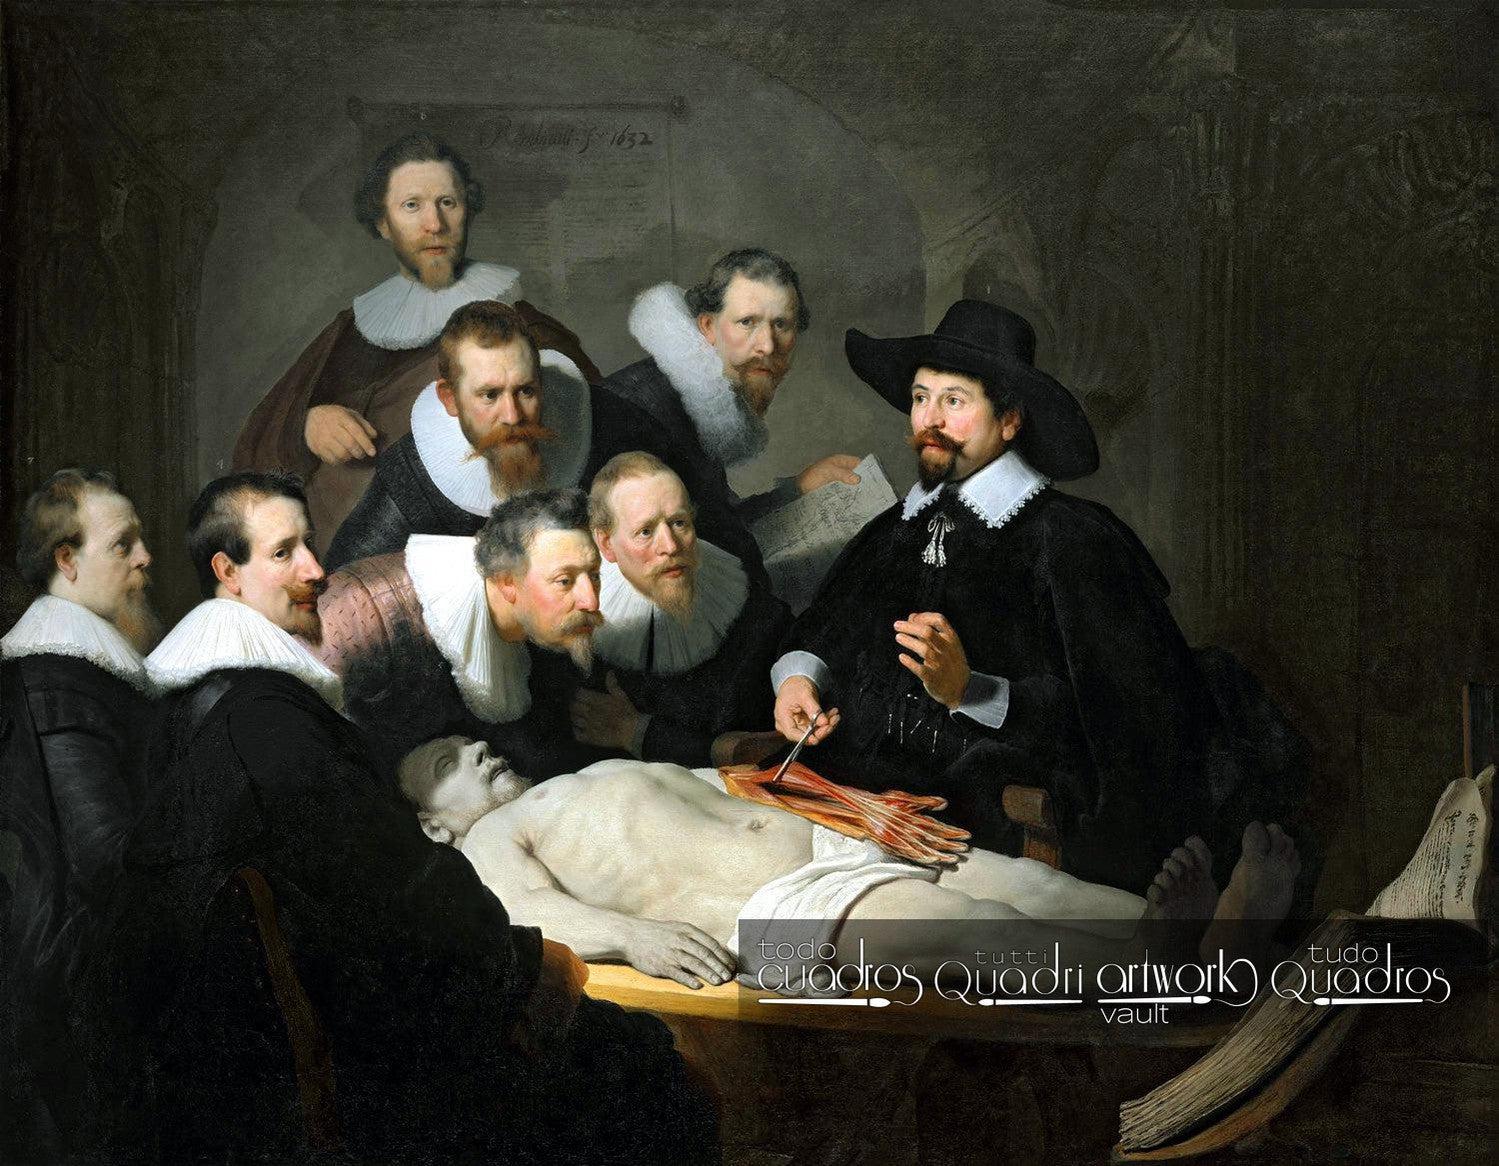 Lección de anatomía del Dr. Nicolaes Tulp, Rembrandt